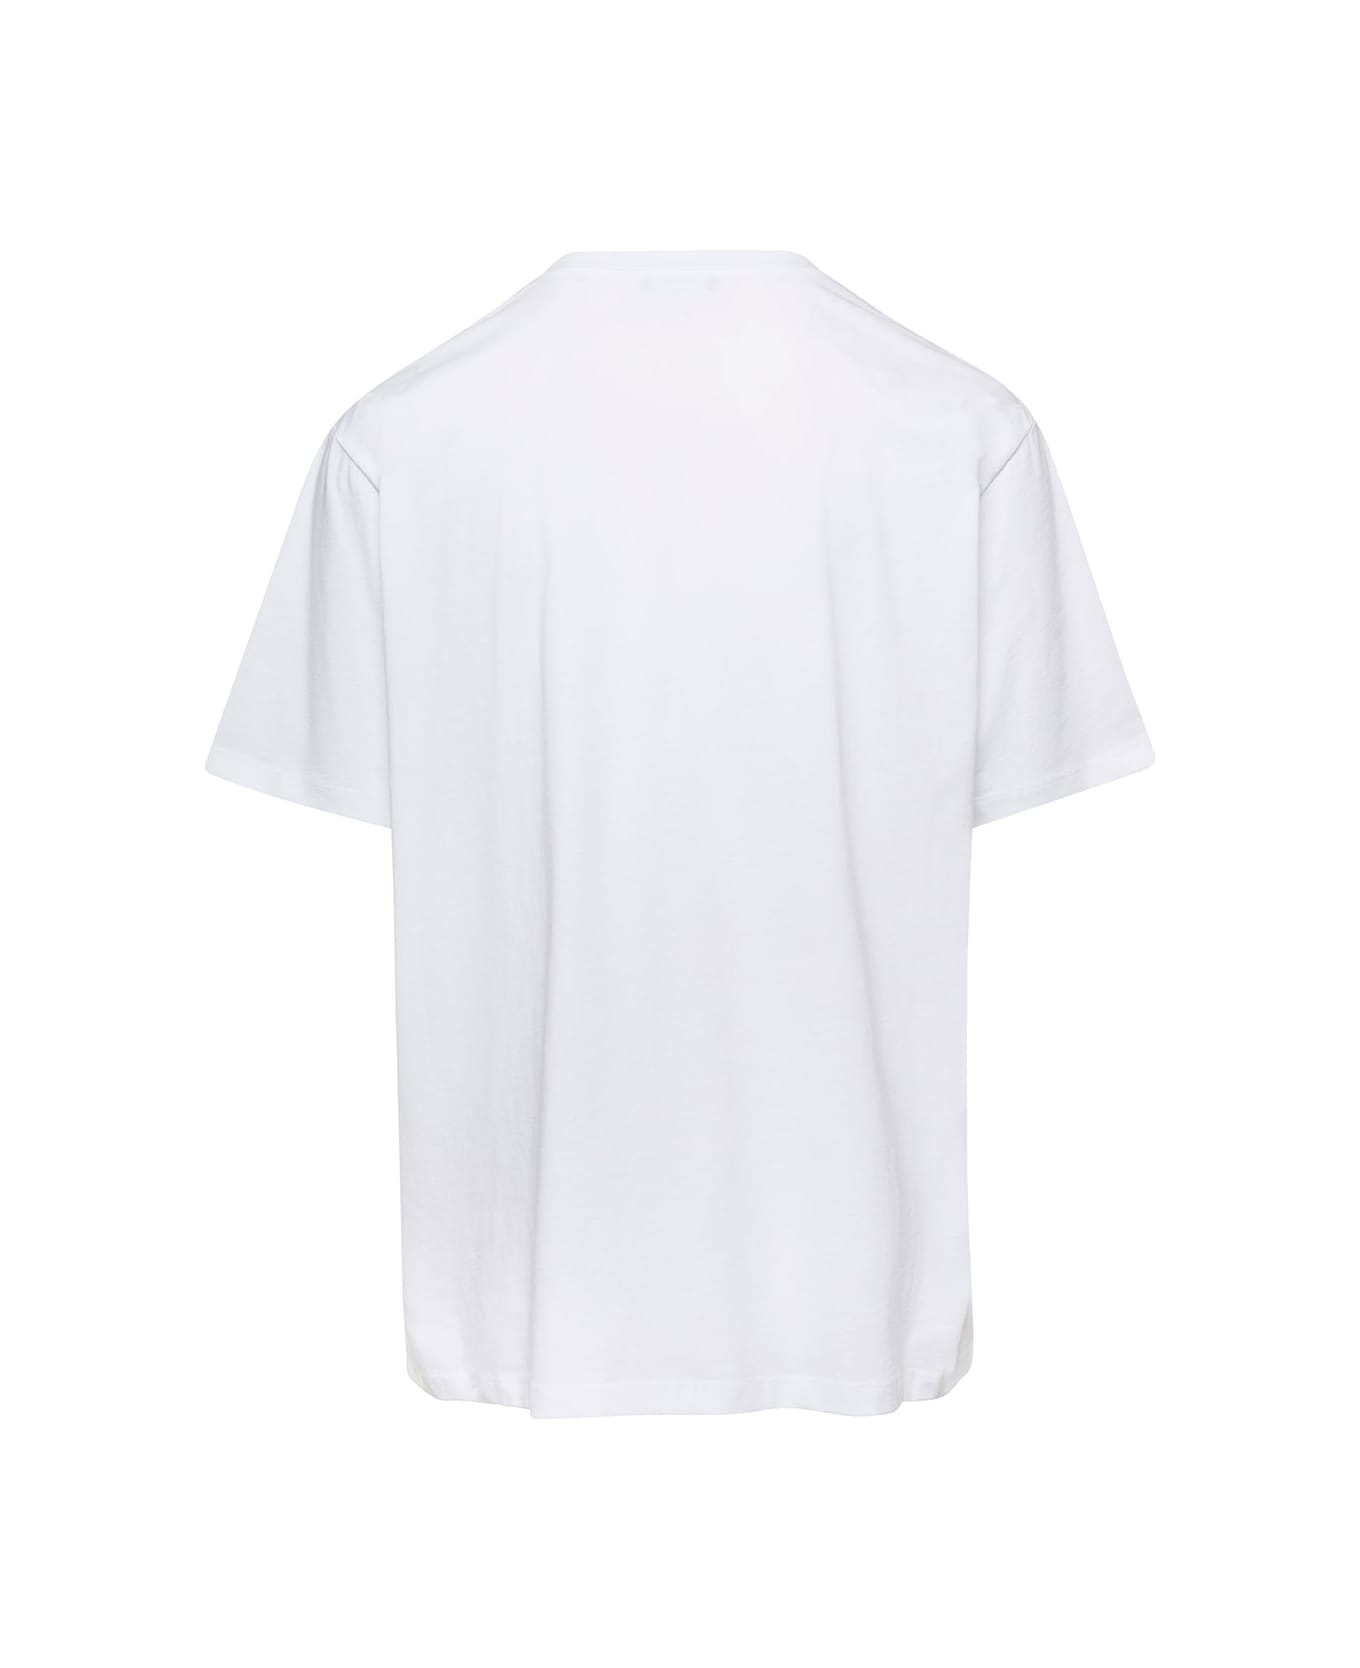 Balmain White Crew Neck T-shirt With Logo Print On The Chest In Cotton Man - White